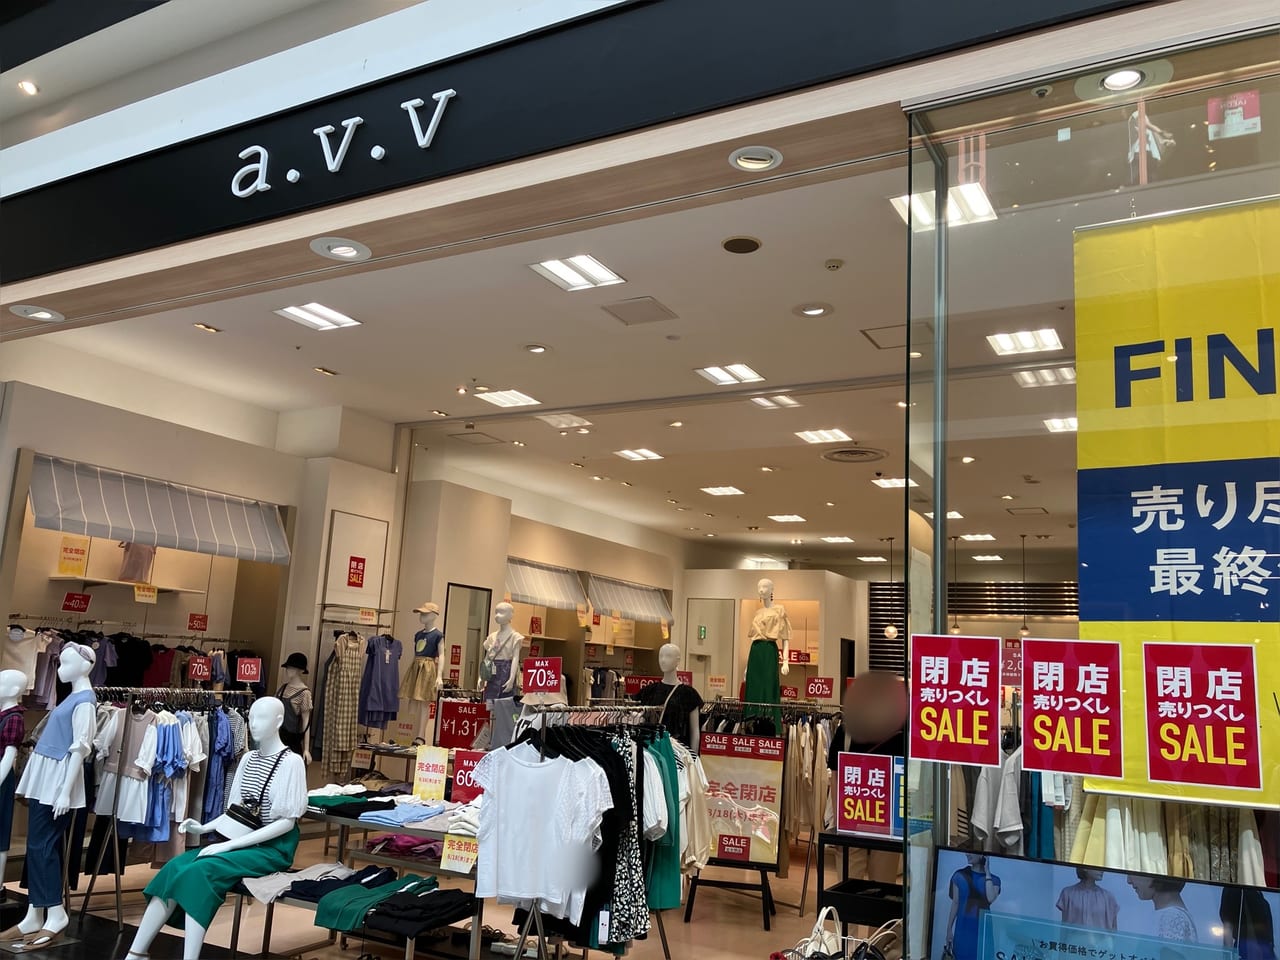 今月は「semanticdesign」に続き2店舗目の閉店。「a.v.v」が2022年8月18日に閉店していました。